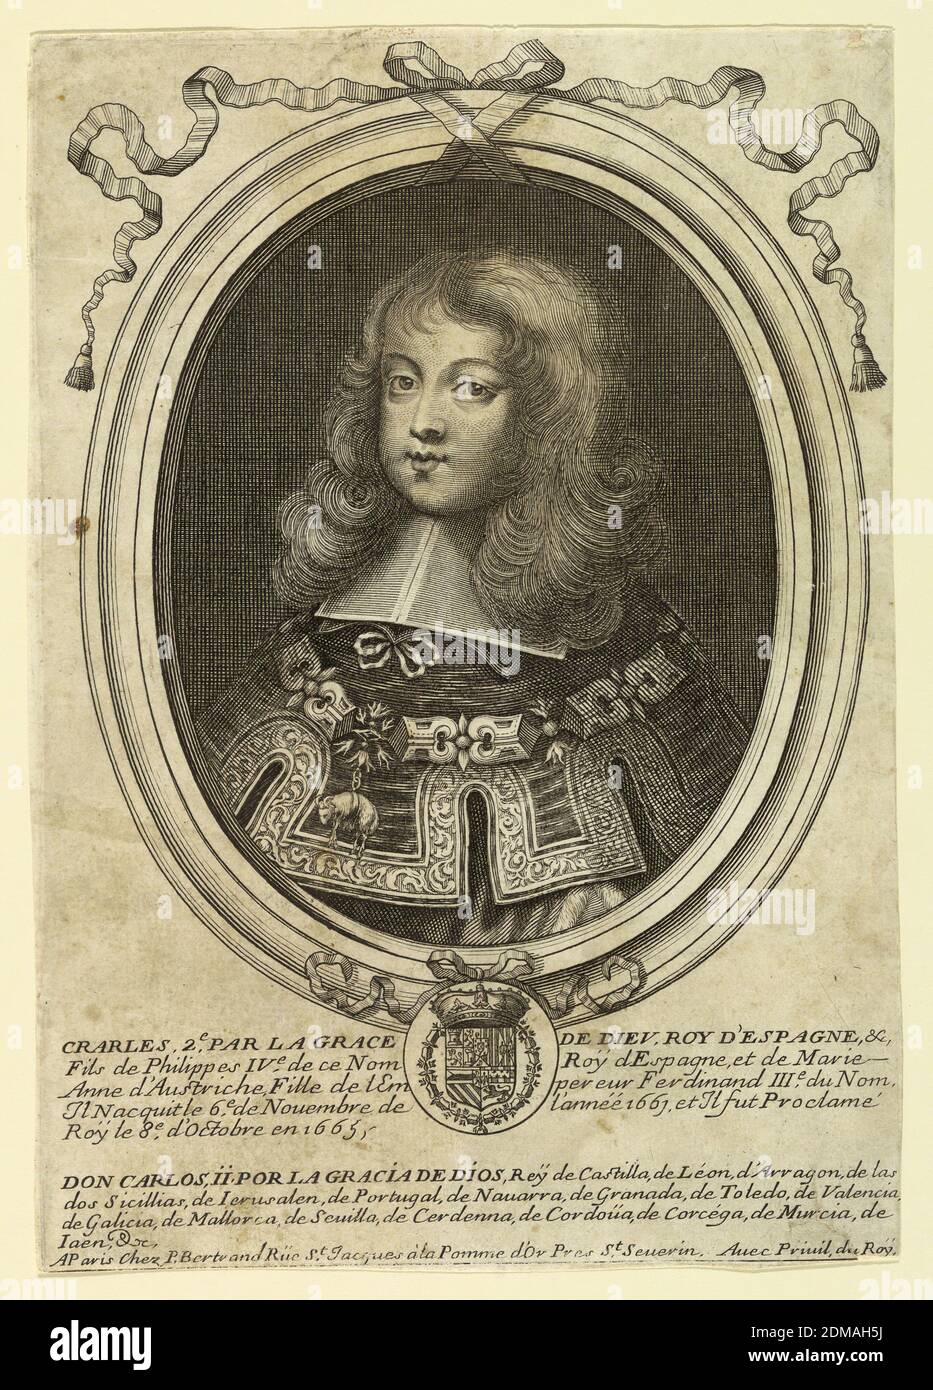 Portrait de Charles II d'Espagne (1661-1700), gravure sur papier, Charles II comme jeune garçon d'environ six ans au moment où il a été proclamé roi. Le beau garçon aux longs cheveux blonds est représenté dans une vue de trois quarts à gauche. Il porte la robe royale sur l'ordre de Toison d'Or; son nom inscrit sur le cadre, ci-dessous., France, 1665-1670, imprimé Banque D'Images